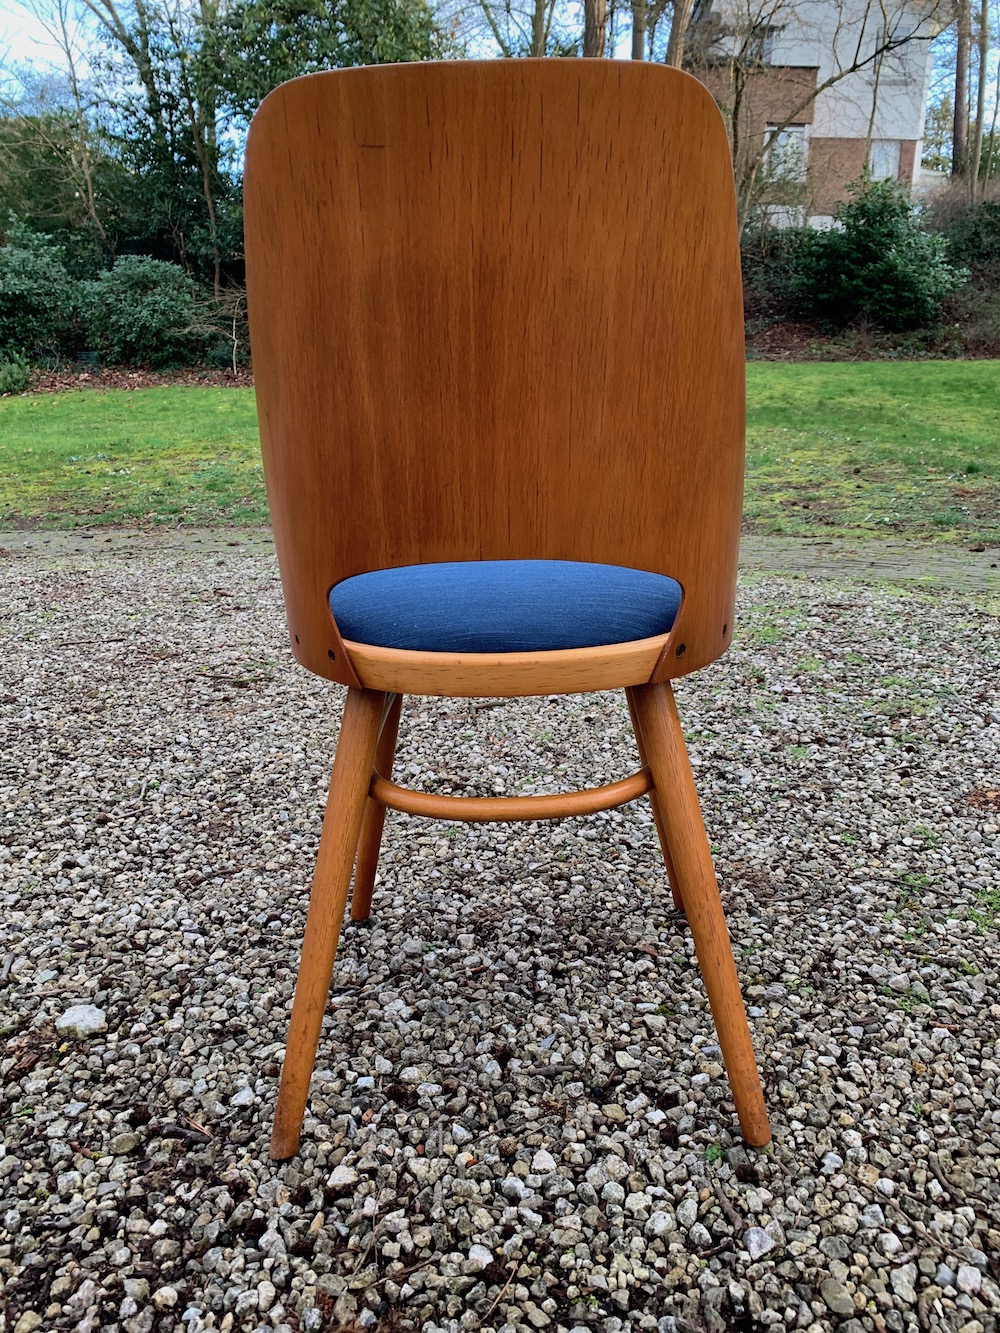 Radomir Hofman, vintage chairs, wooden chairs, design chairs, Czech design, dining, dining chairs, chaises vintage, chaises bois, European design, midmod, midcentury modern design, kitchen, 